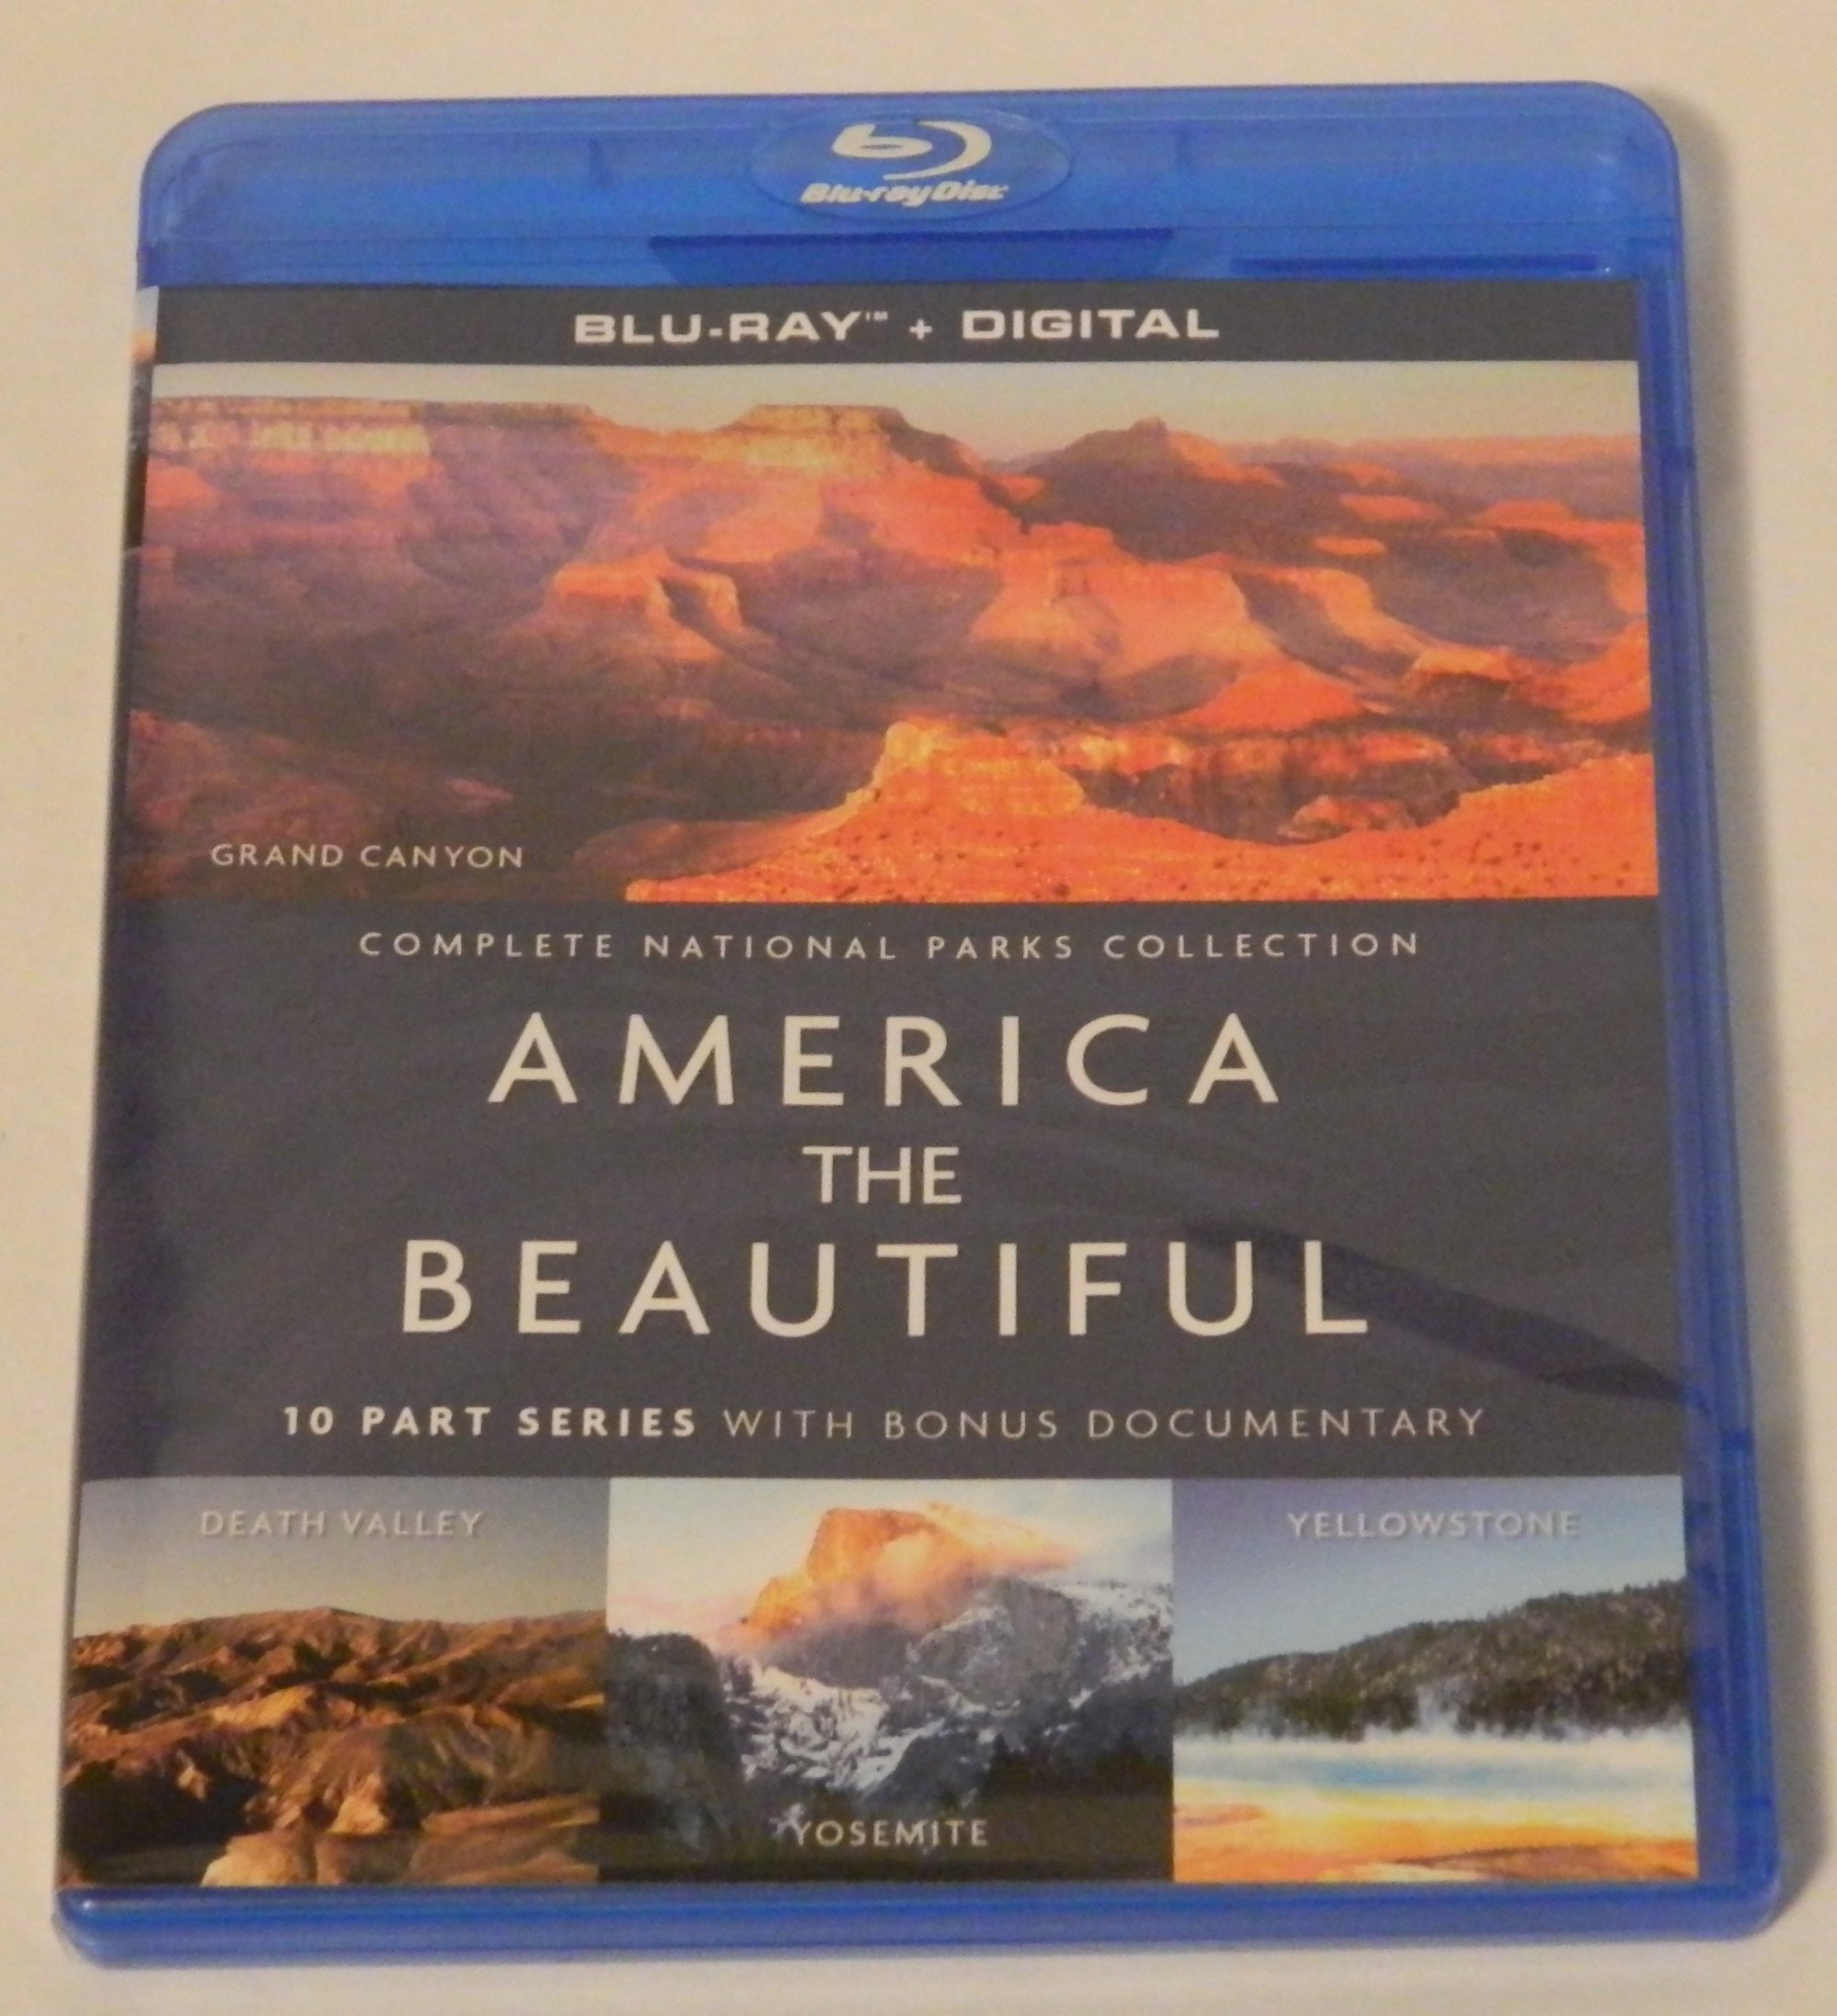 America the Beautiful Blu-ray